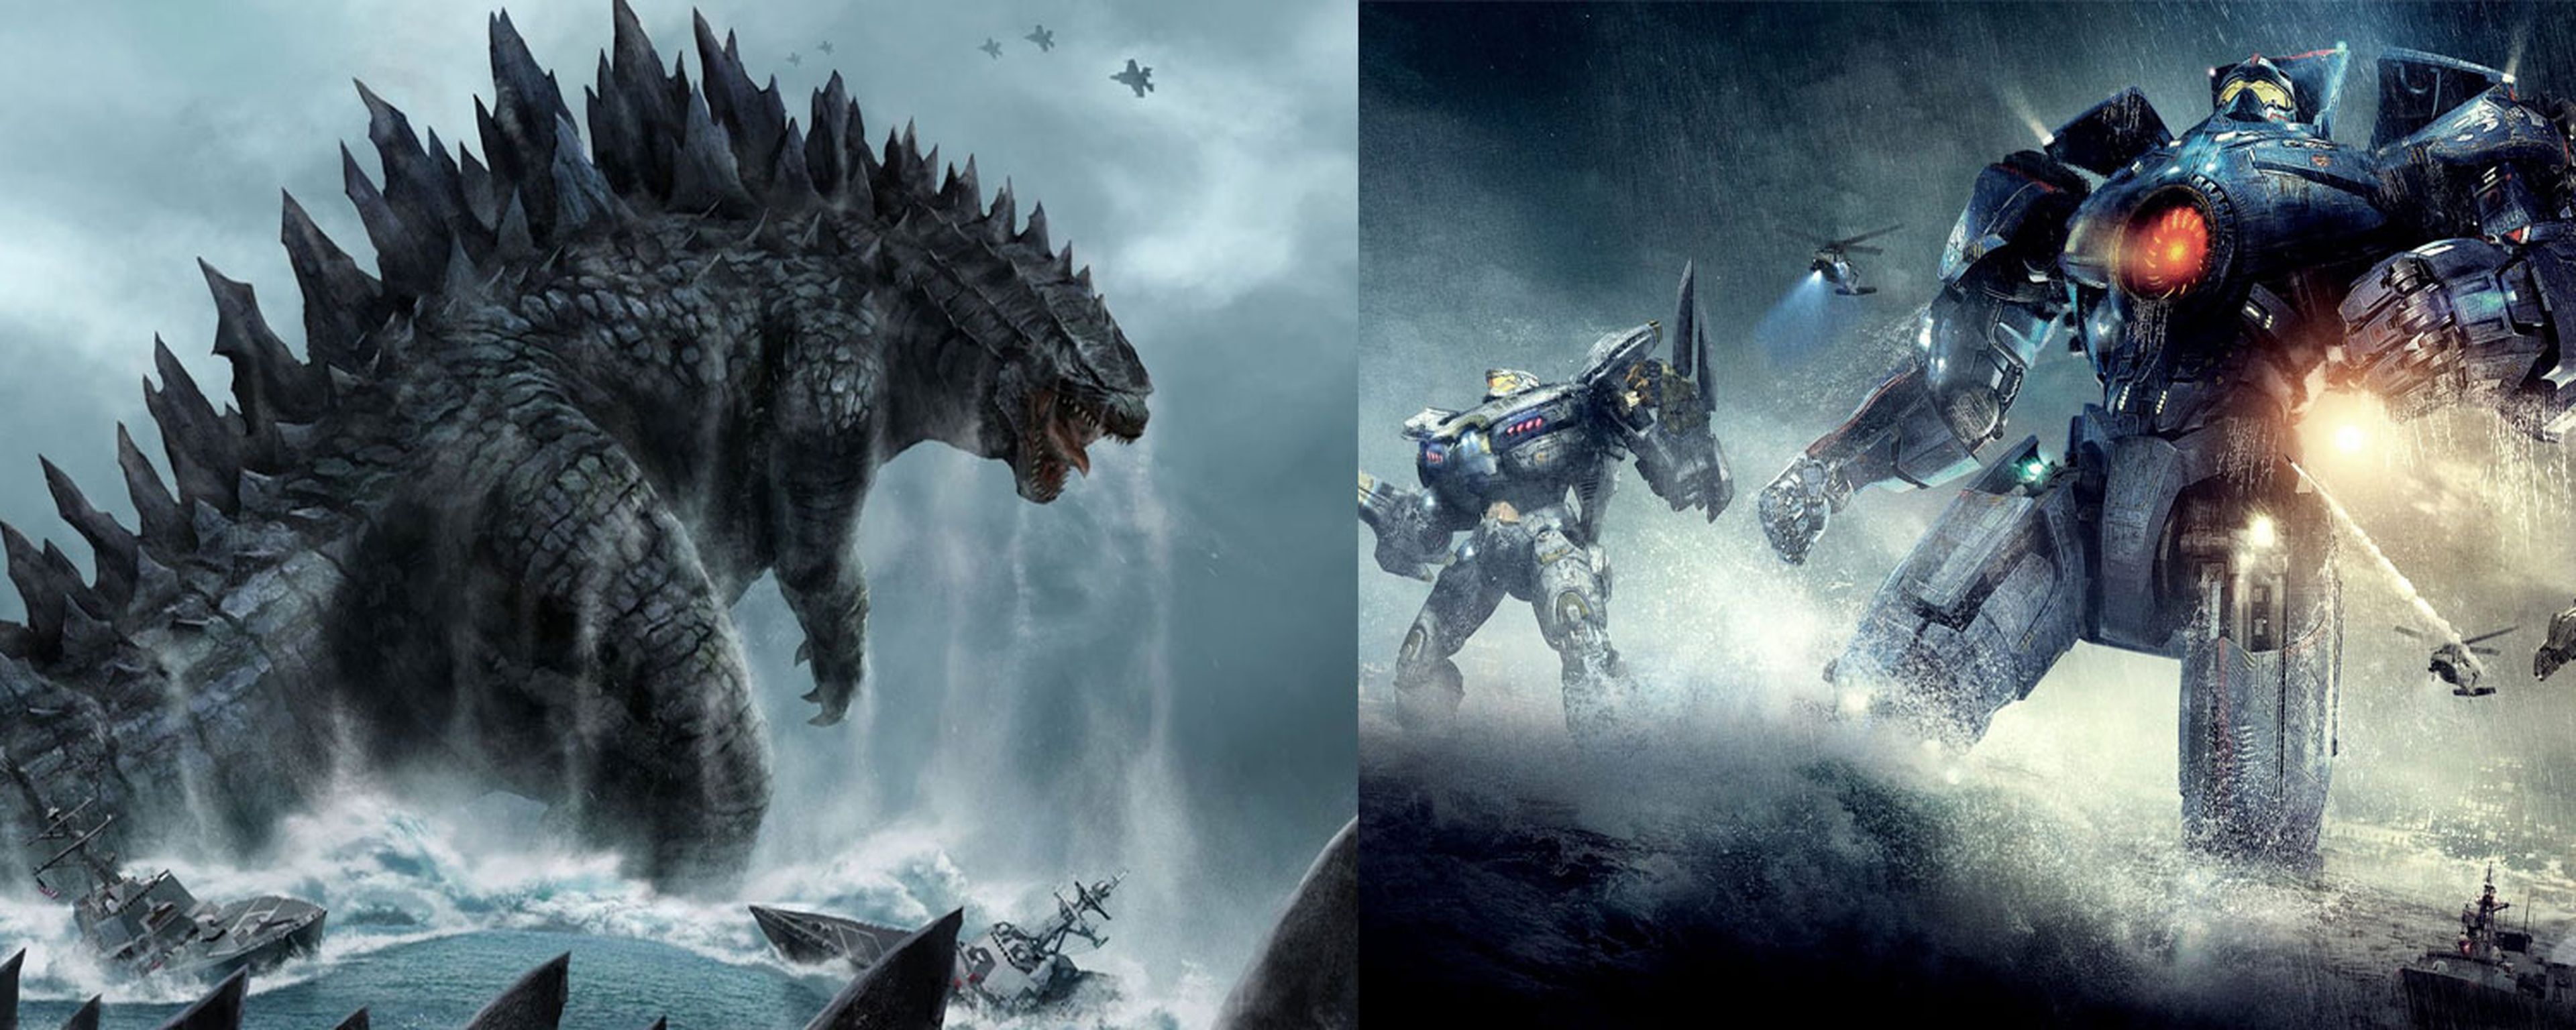 Godzilla y Pacific Rim secuelas